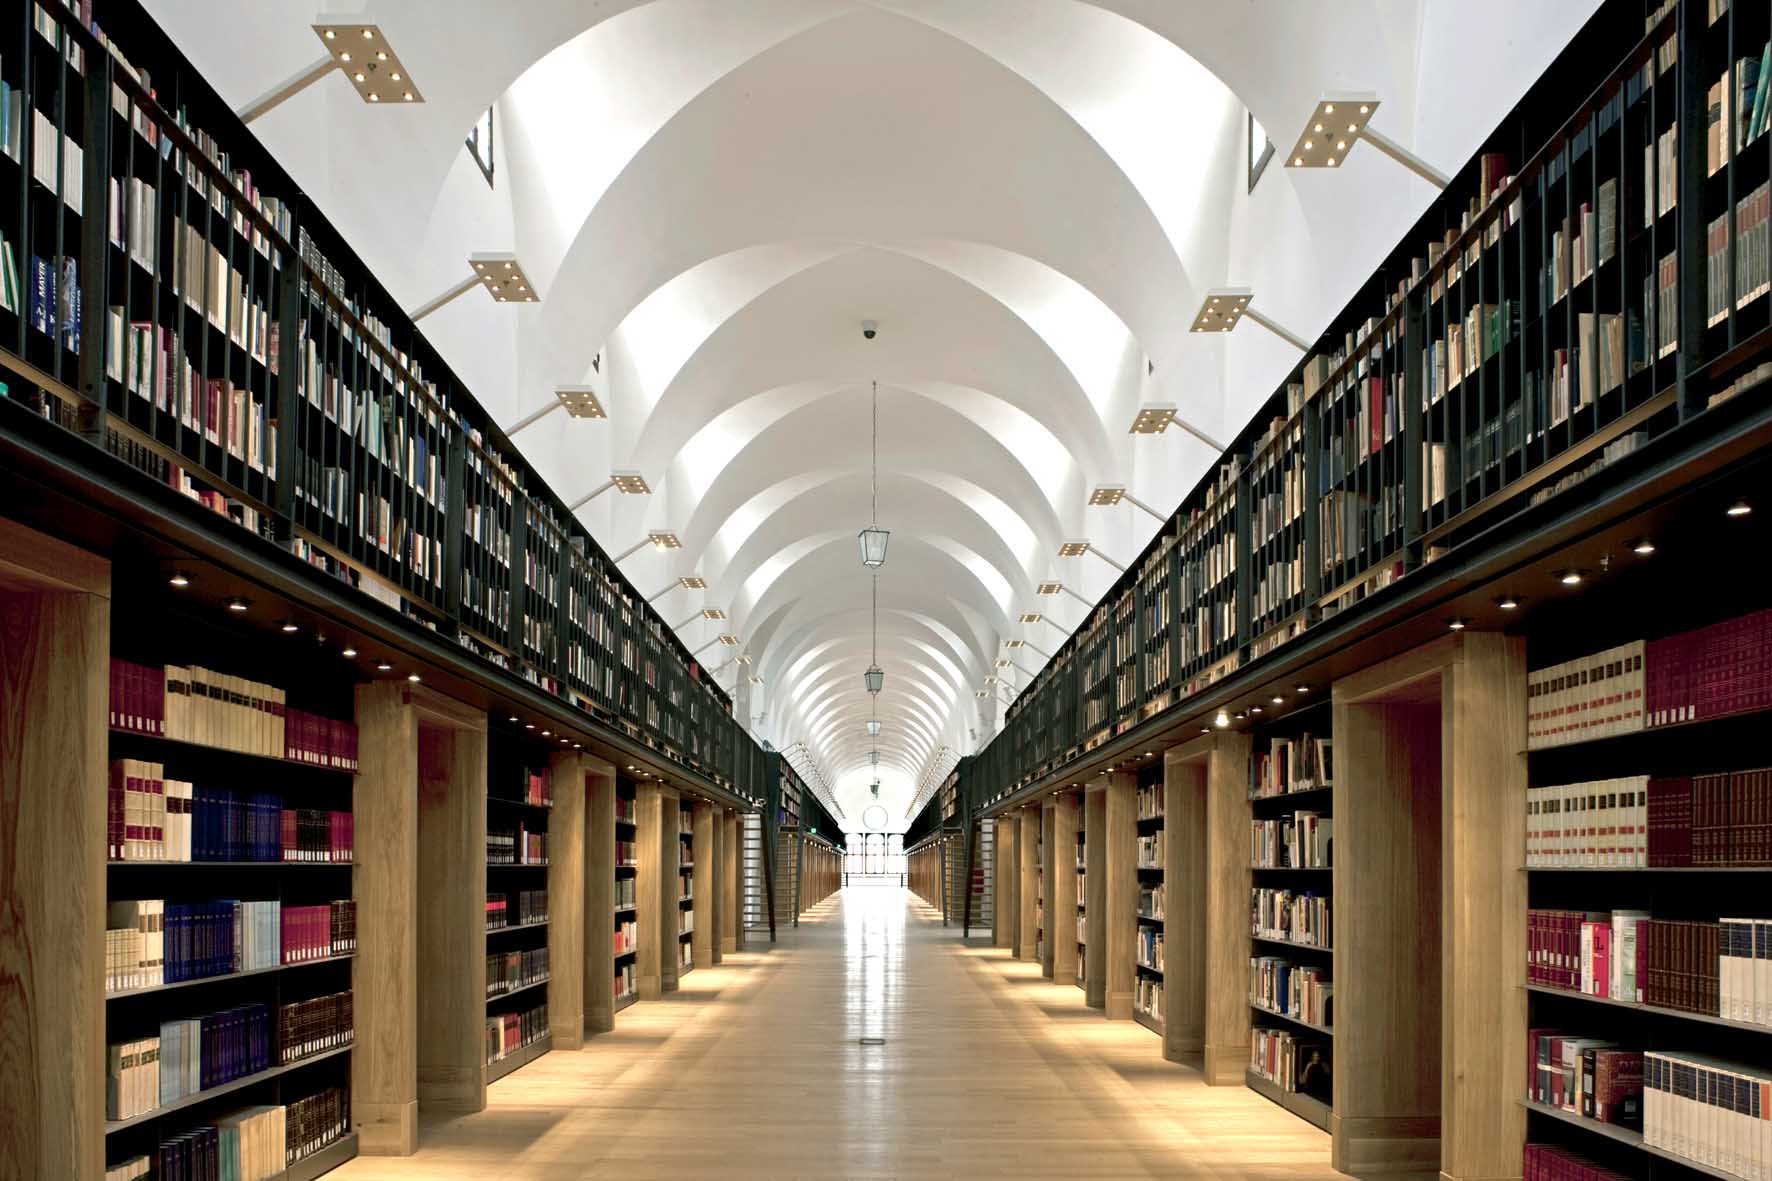 Библиотека знание людям. Библиотеки фонда Джорджио чини в Венеции. Библиотека Джорджио чини. Потолок в библиотеке. Библиотека архитектура.